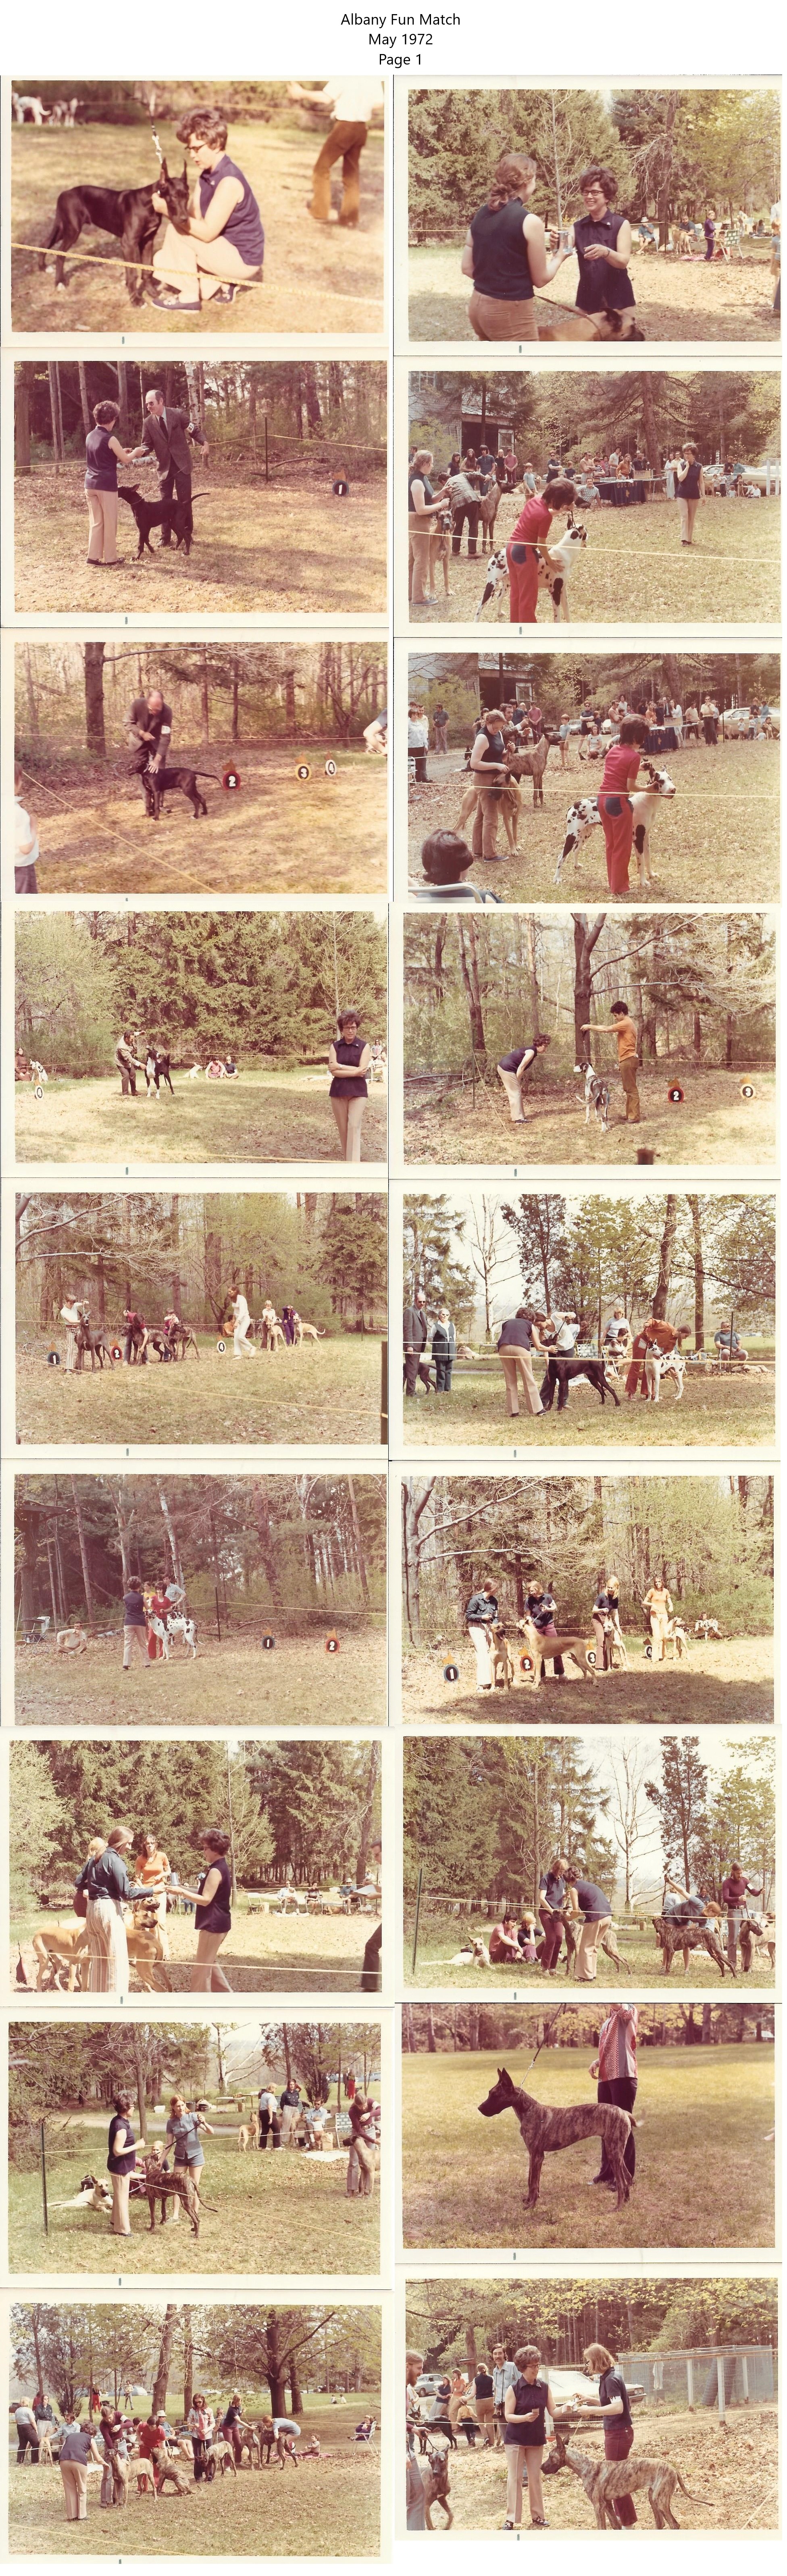 Albany Fun Match 1972 P1